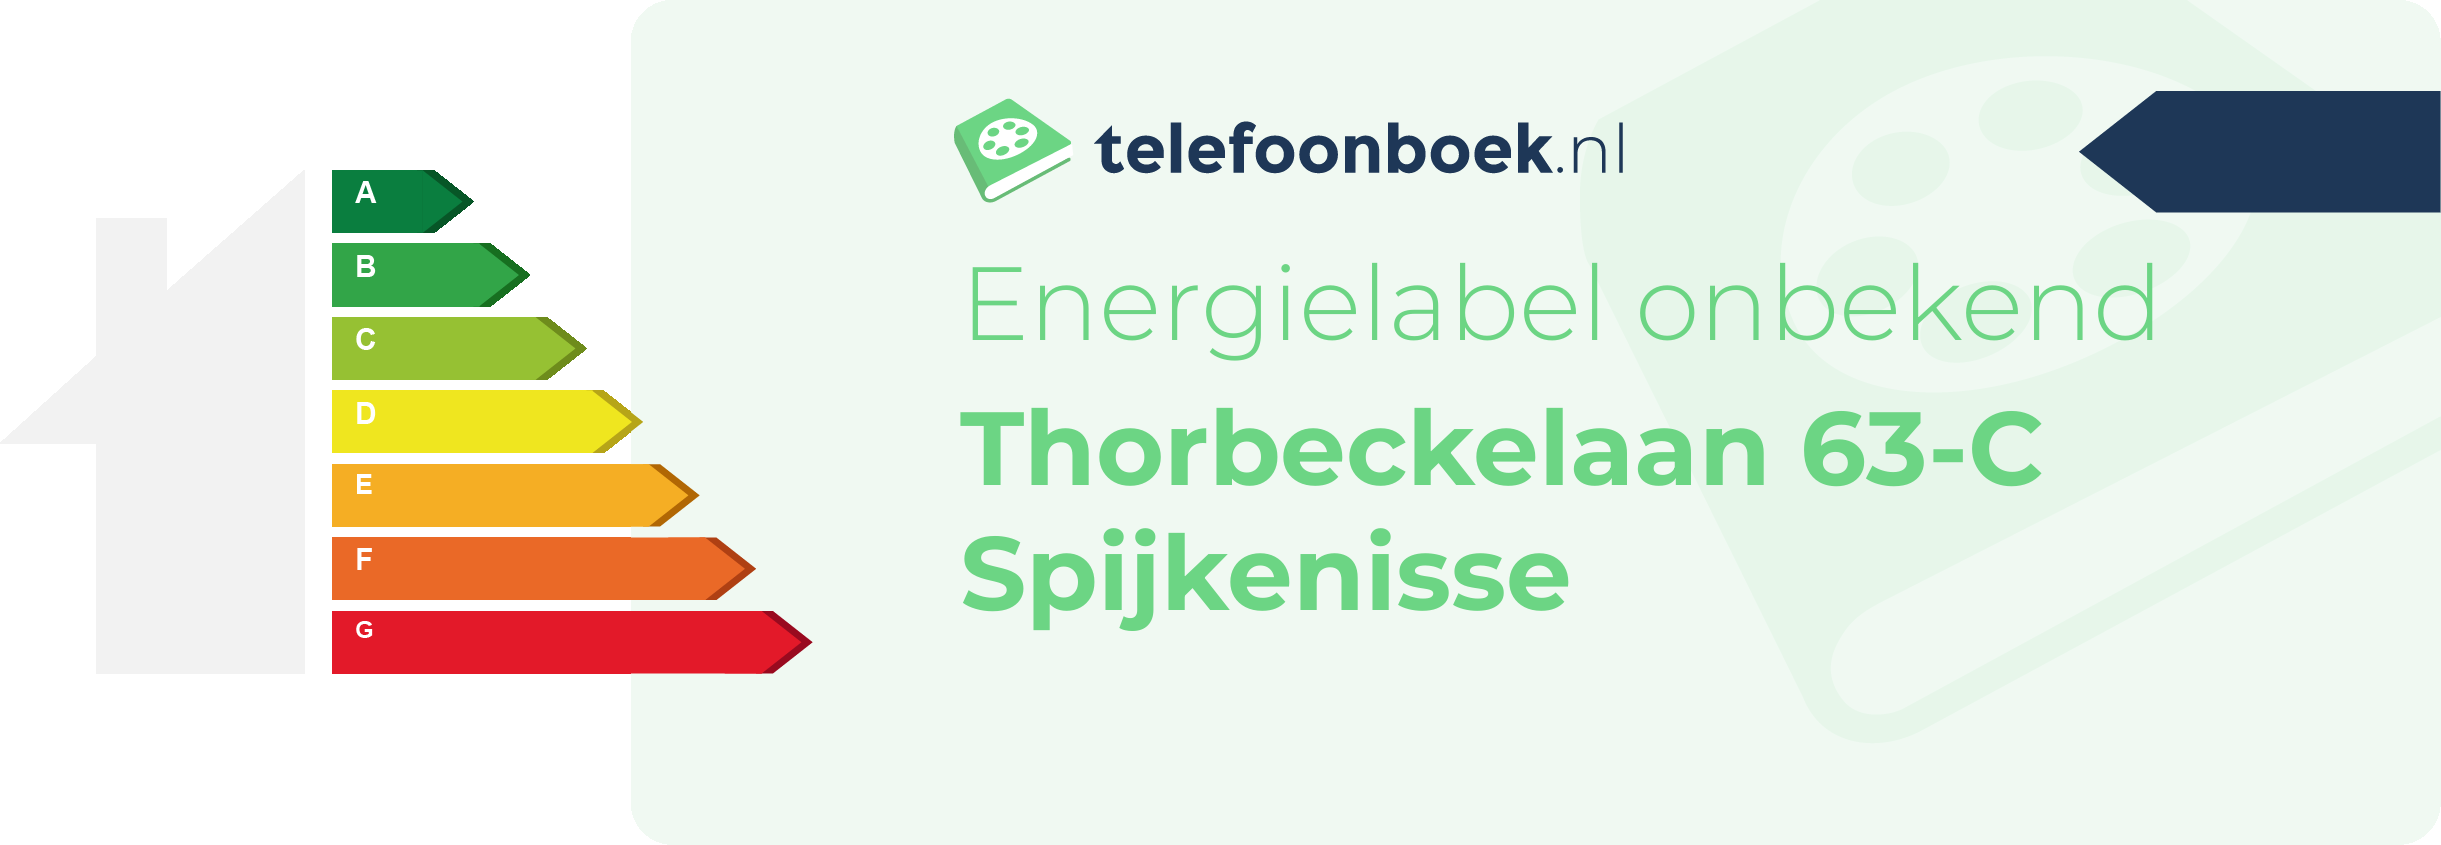 Energielabel Thorbeckelaan 63-C Spijkenisse